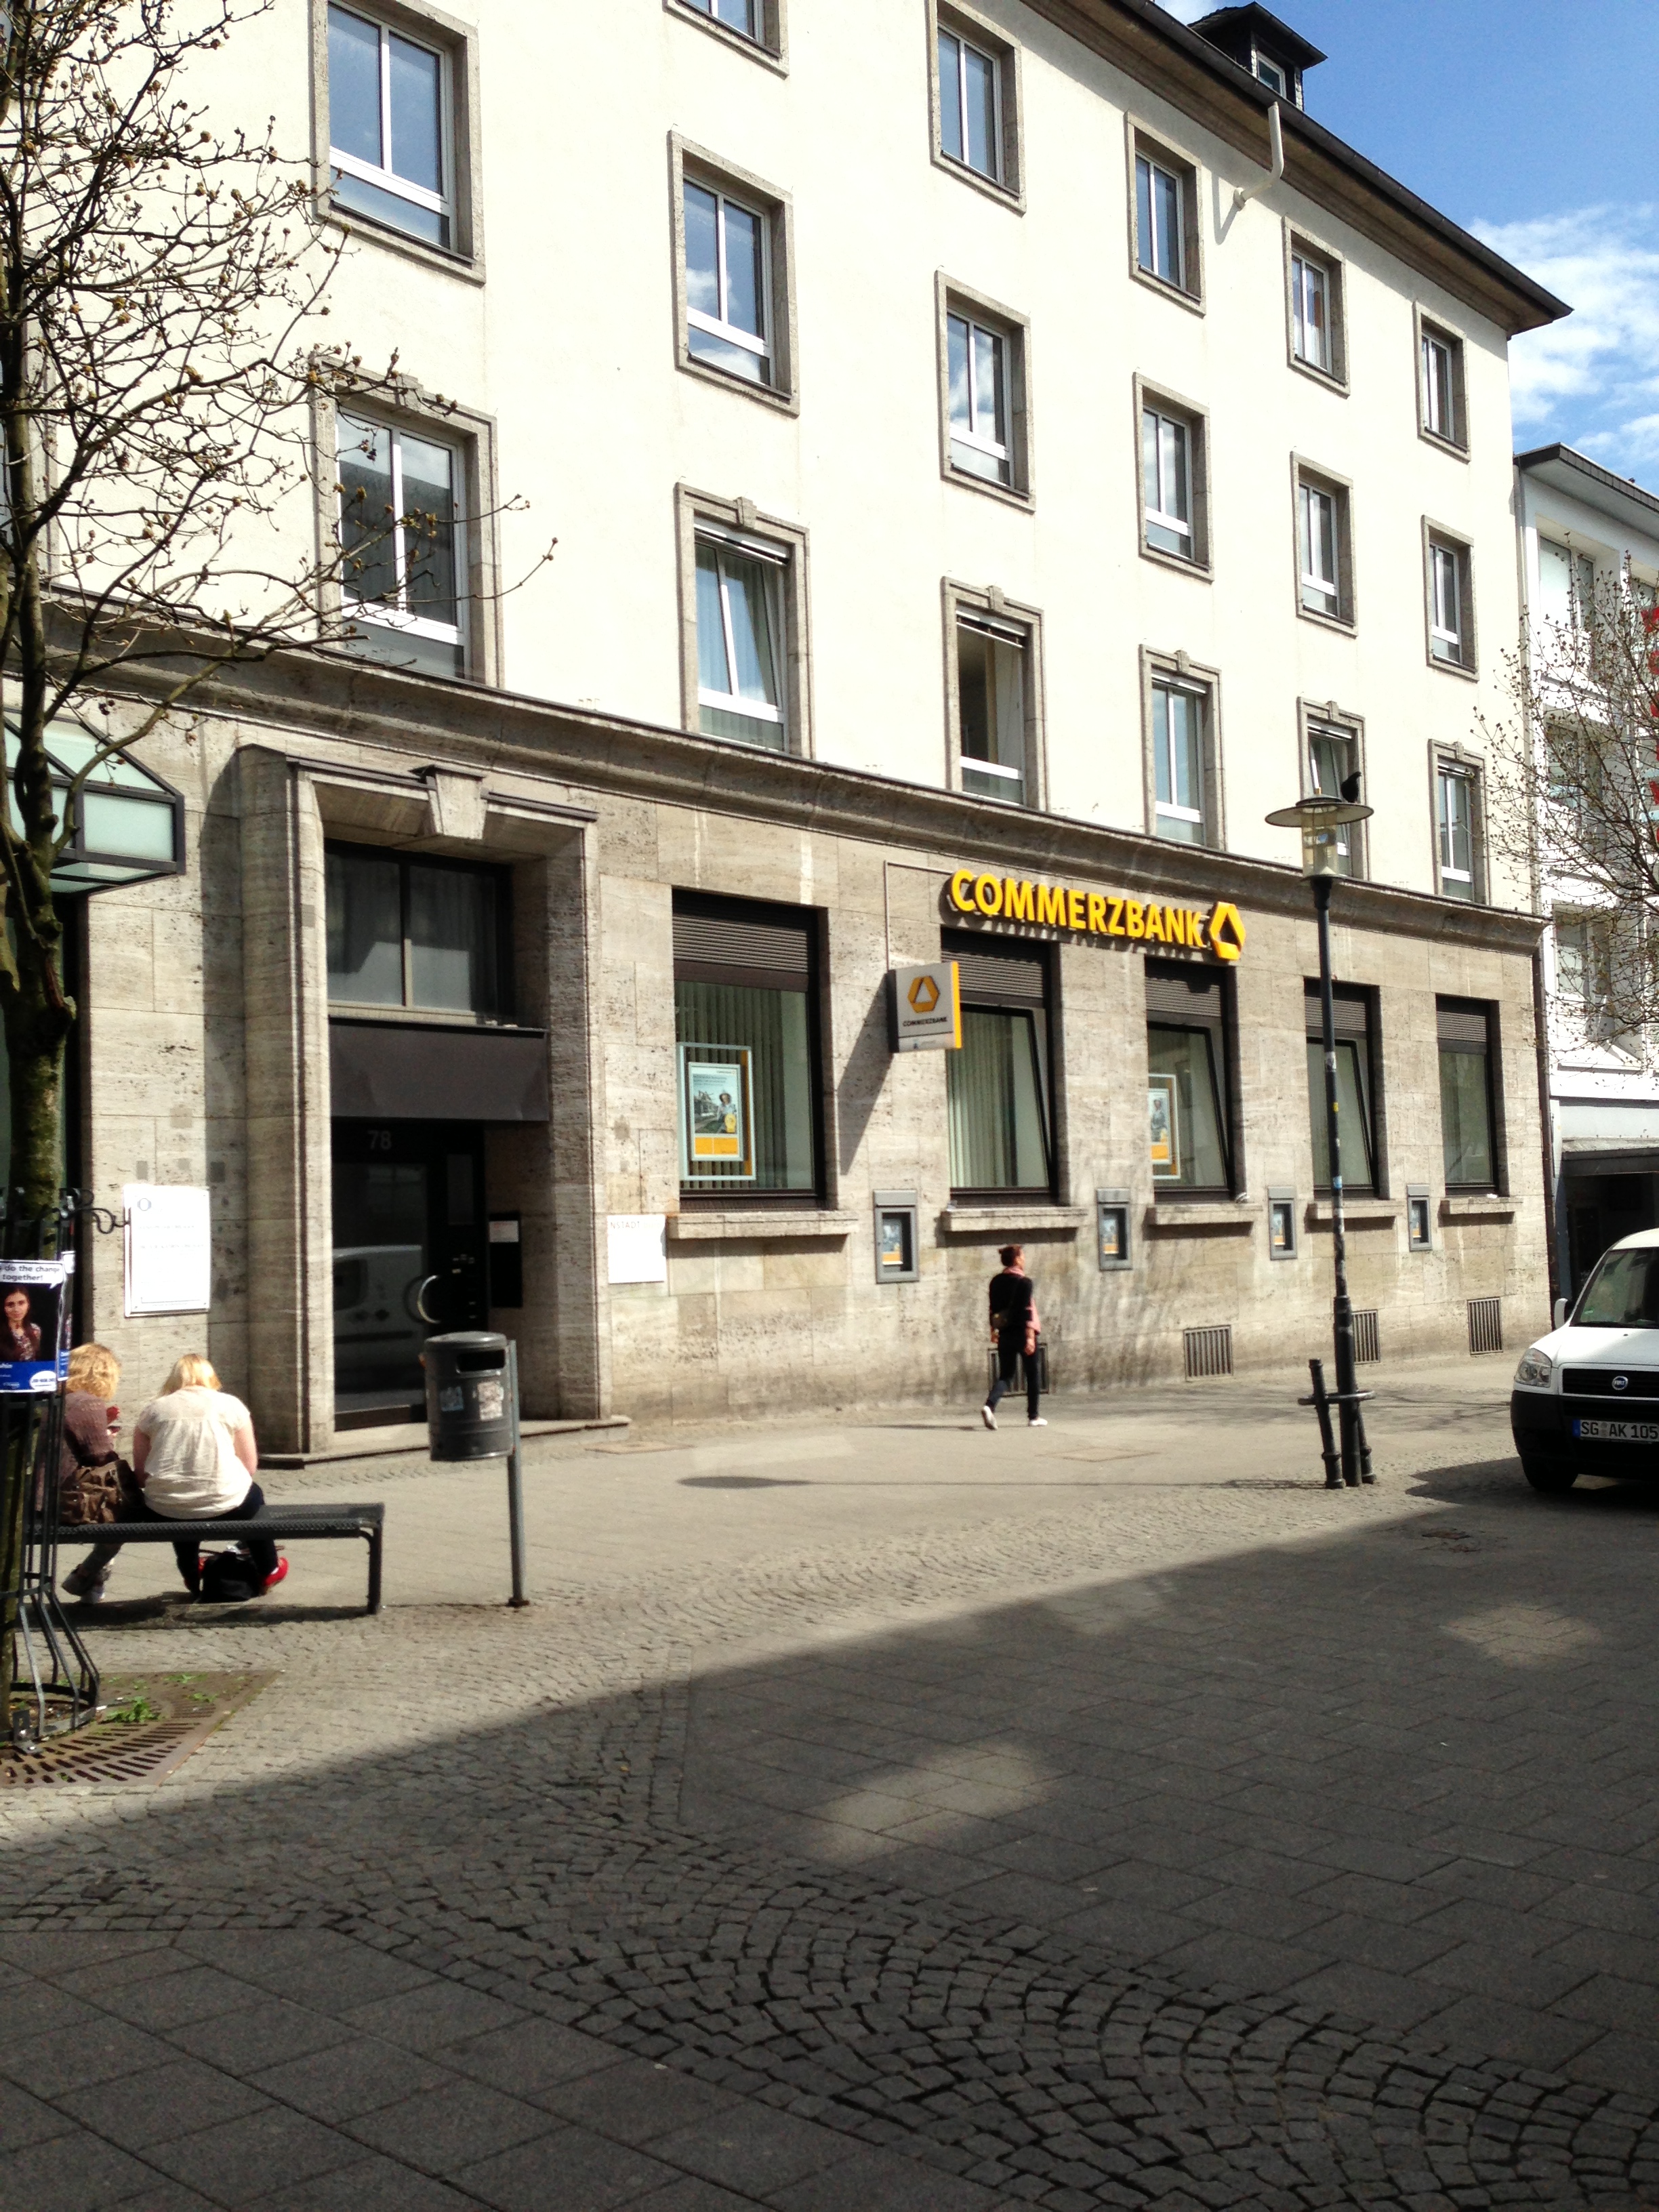 Bild 1 Commerzbank AG in Solingen